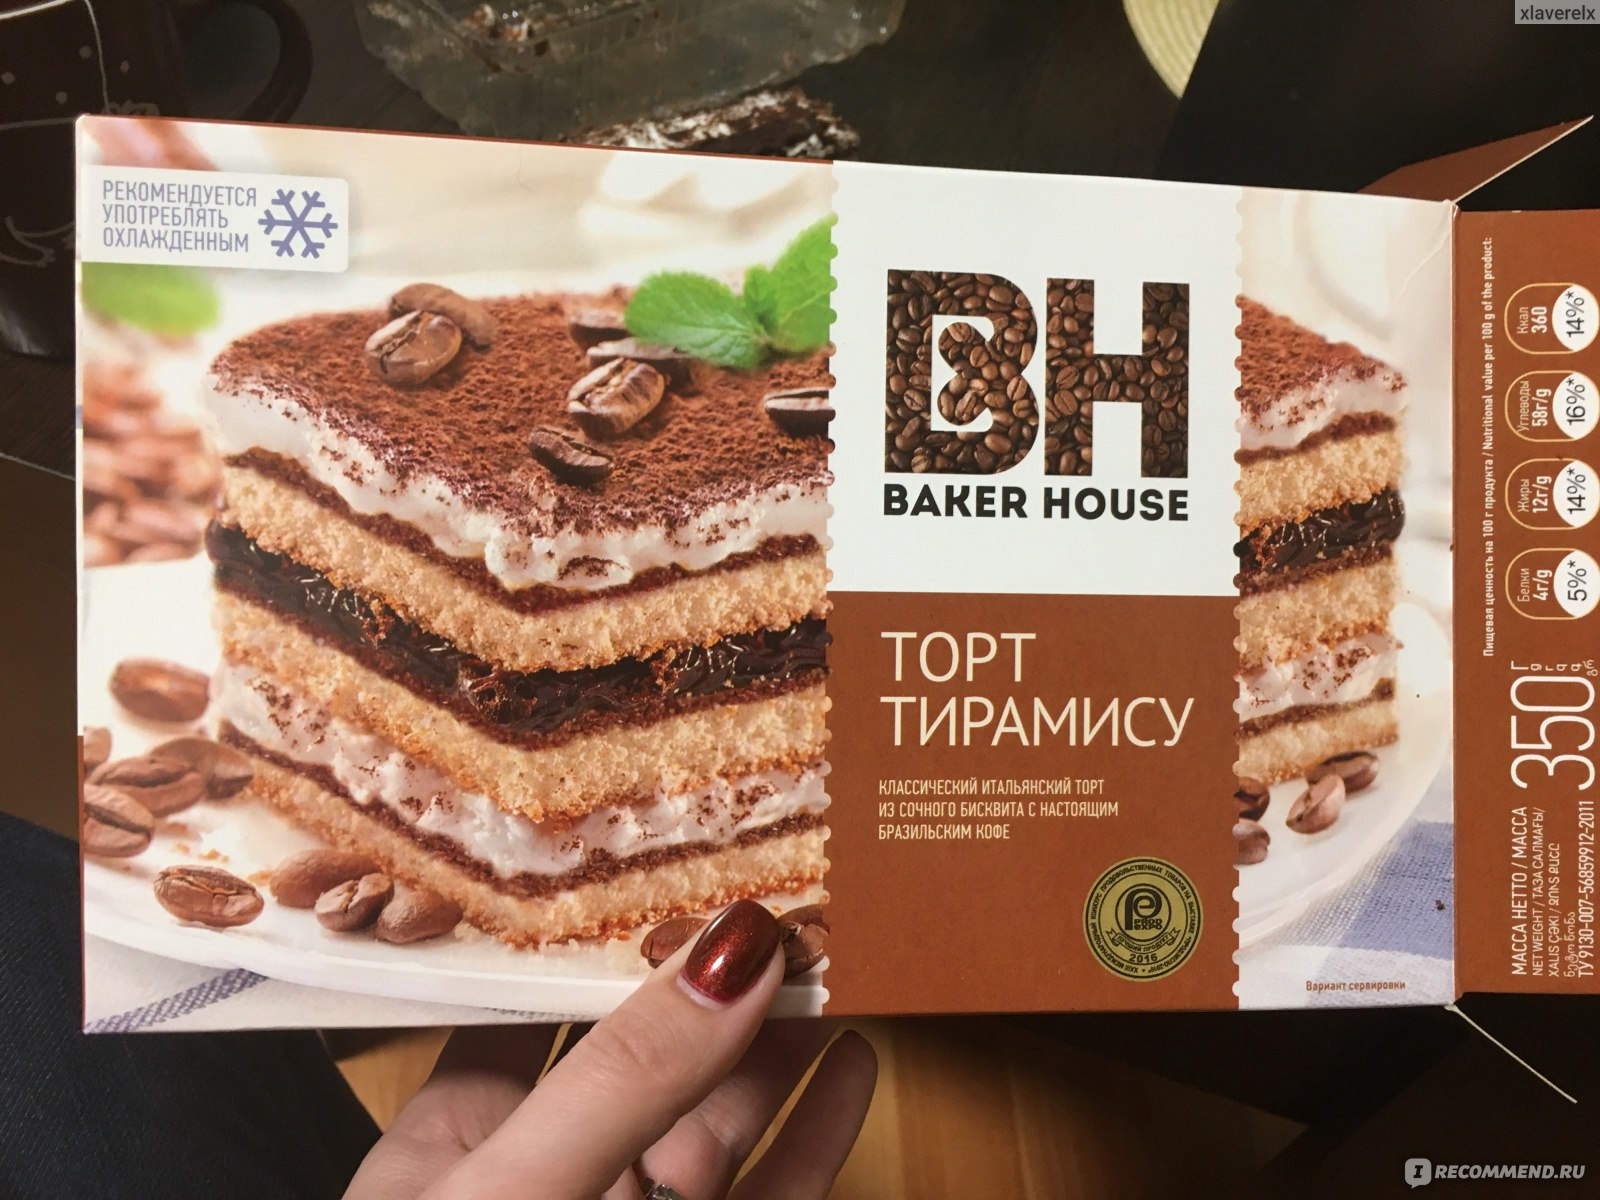 Категория: Разные продукты Бренд: Baker House Тип продукта: Торт.